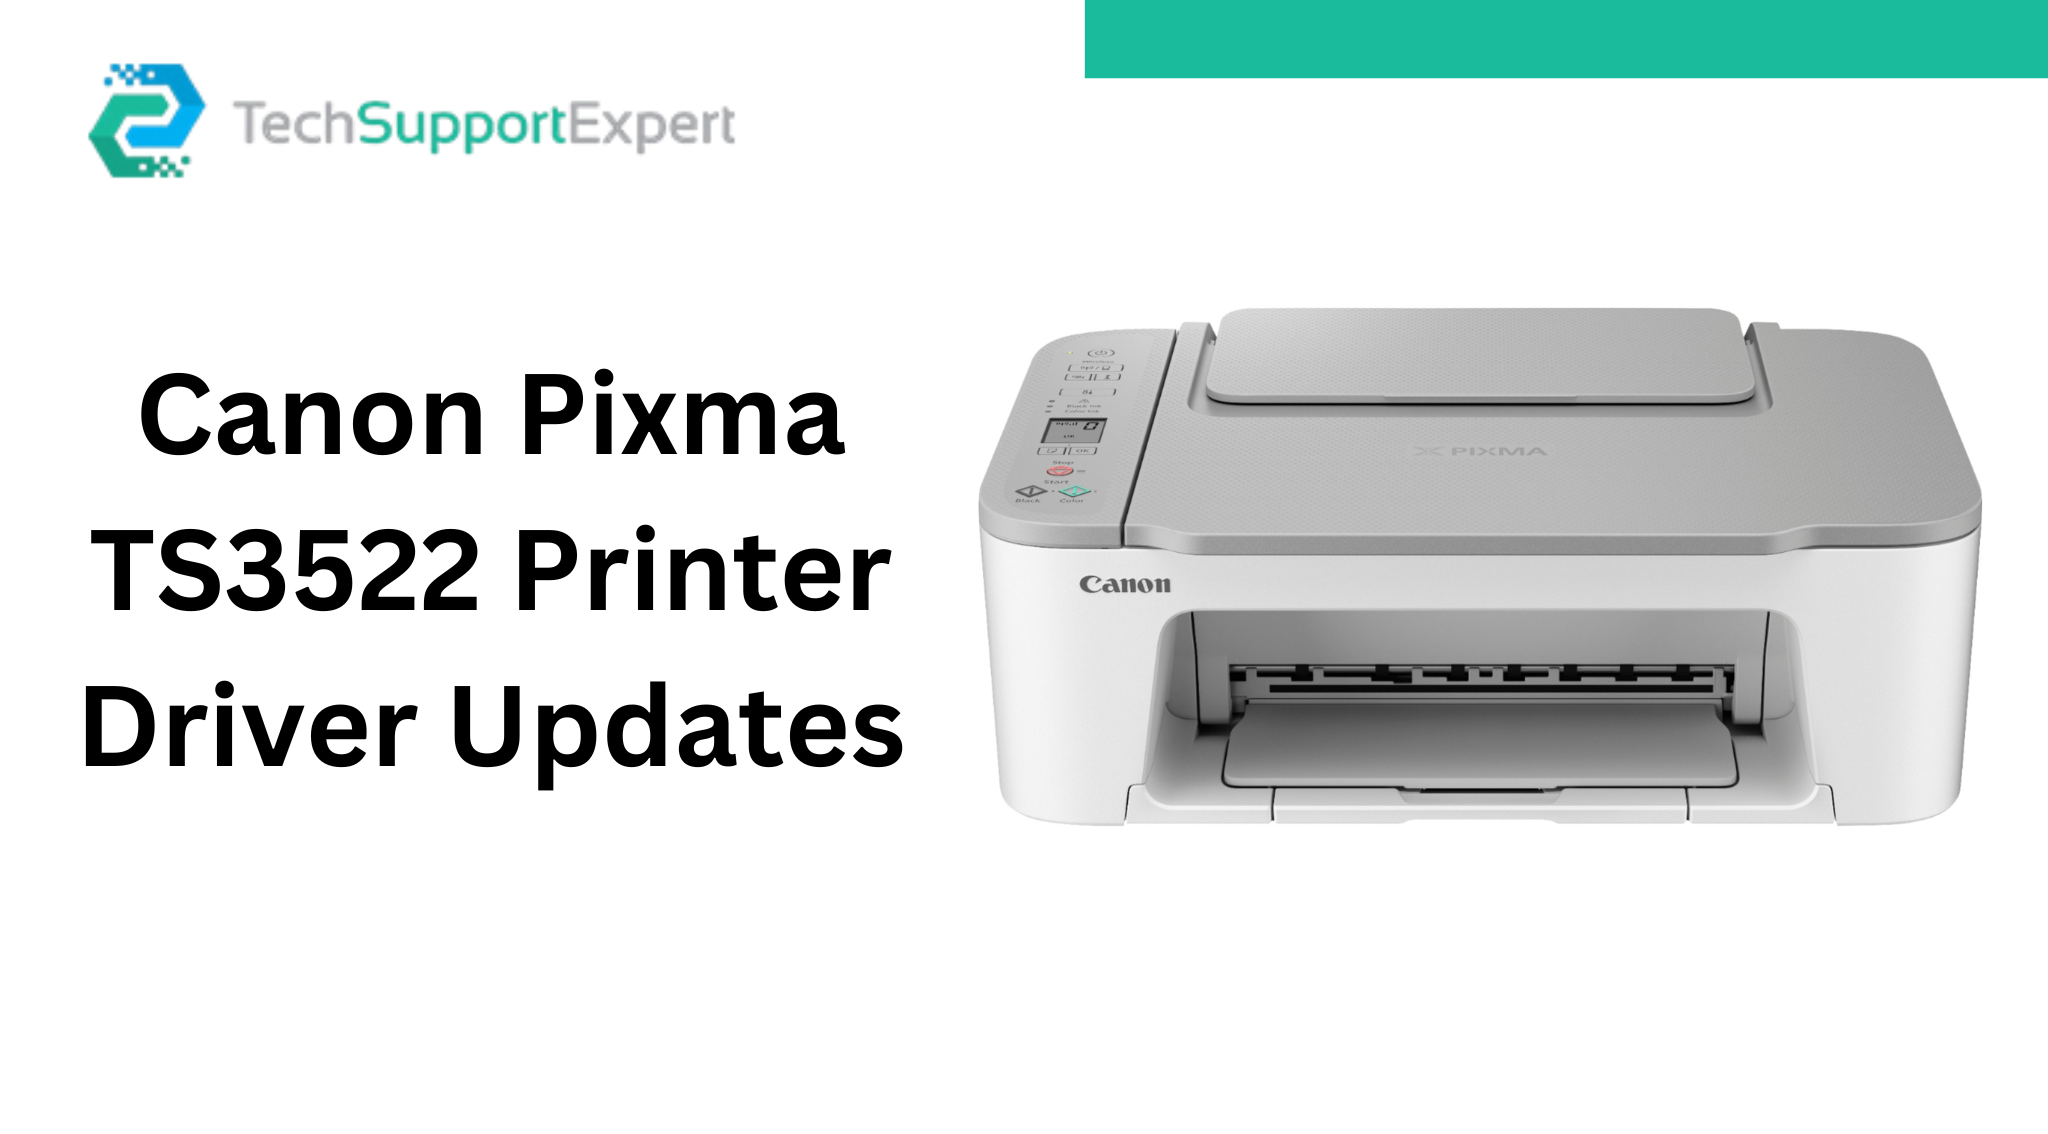 Canon Pixma TS3522 Printer Driver Updates